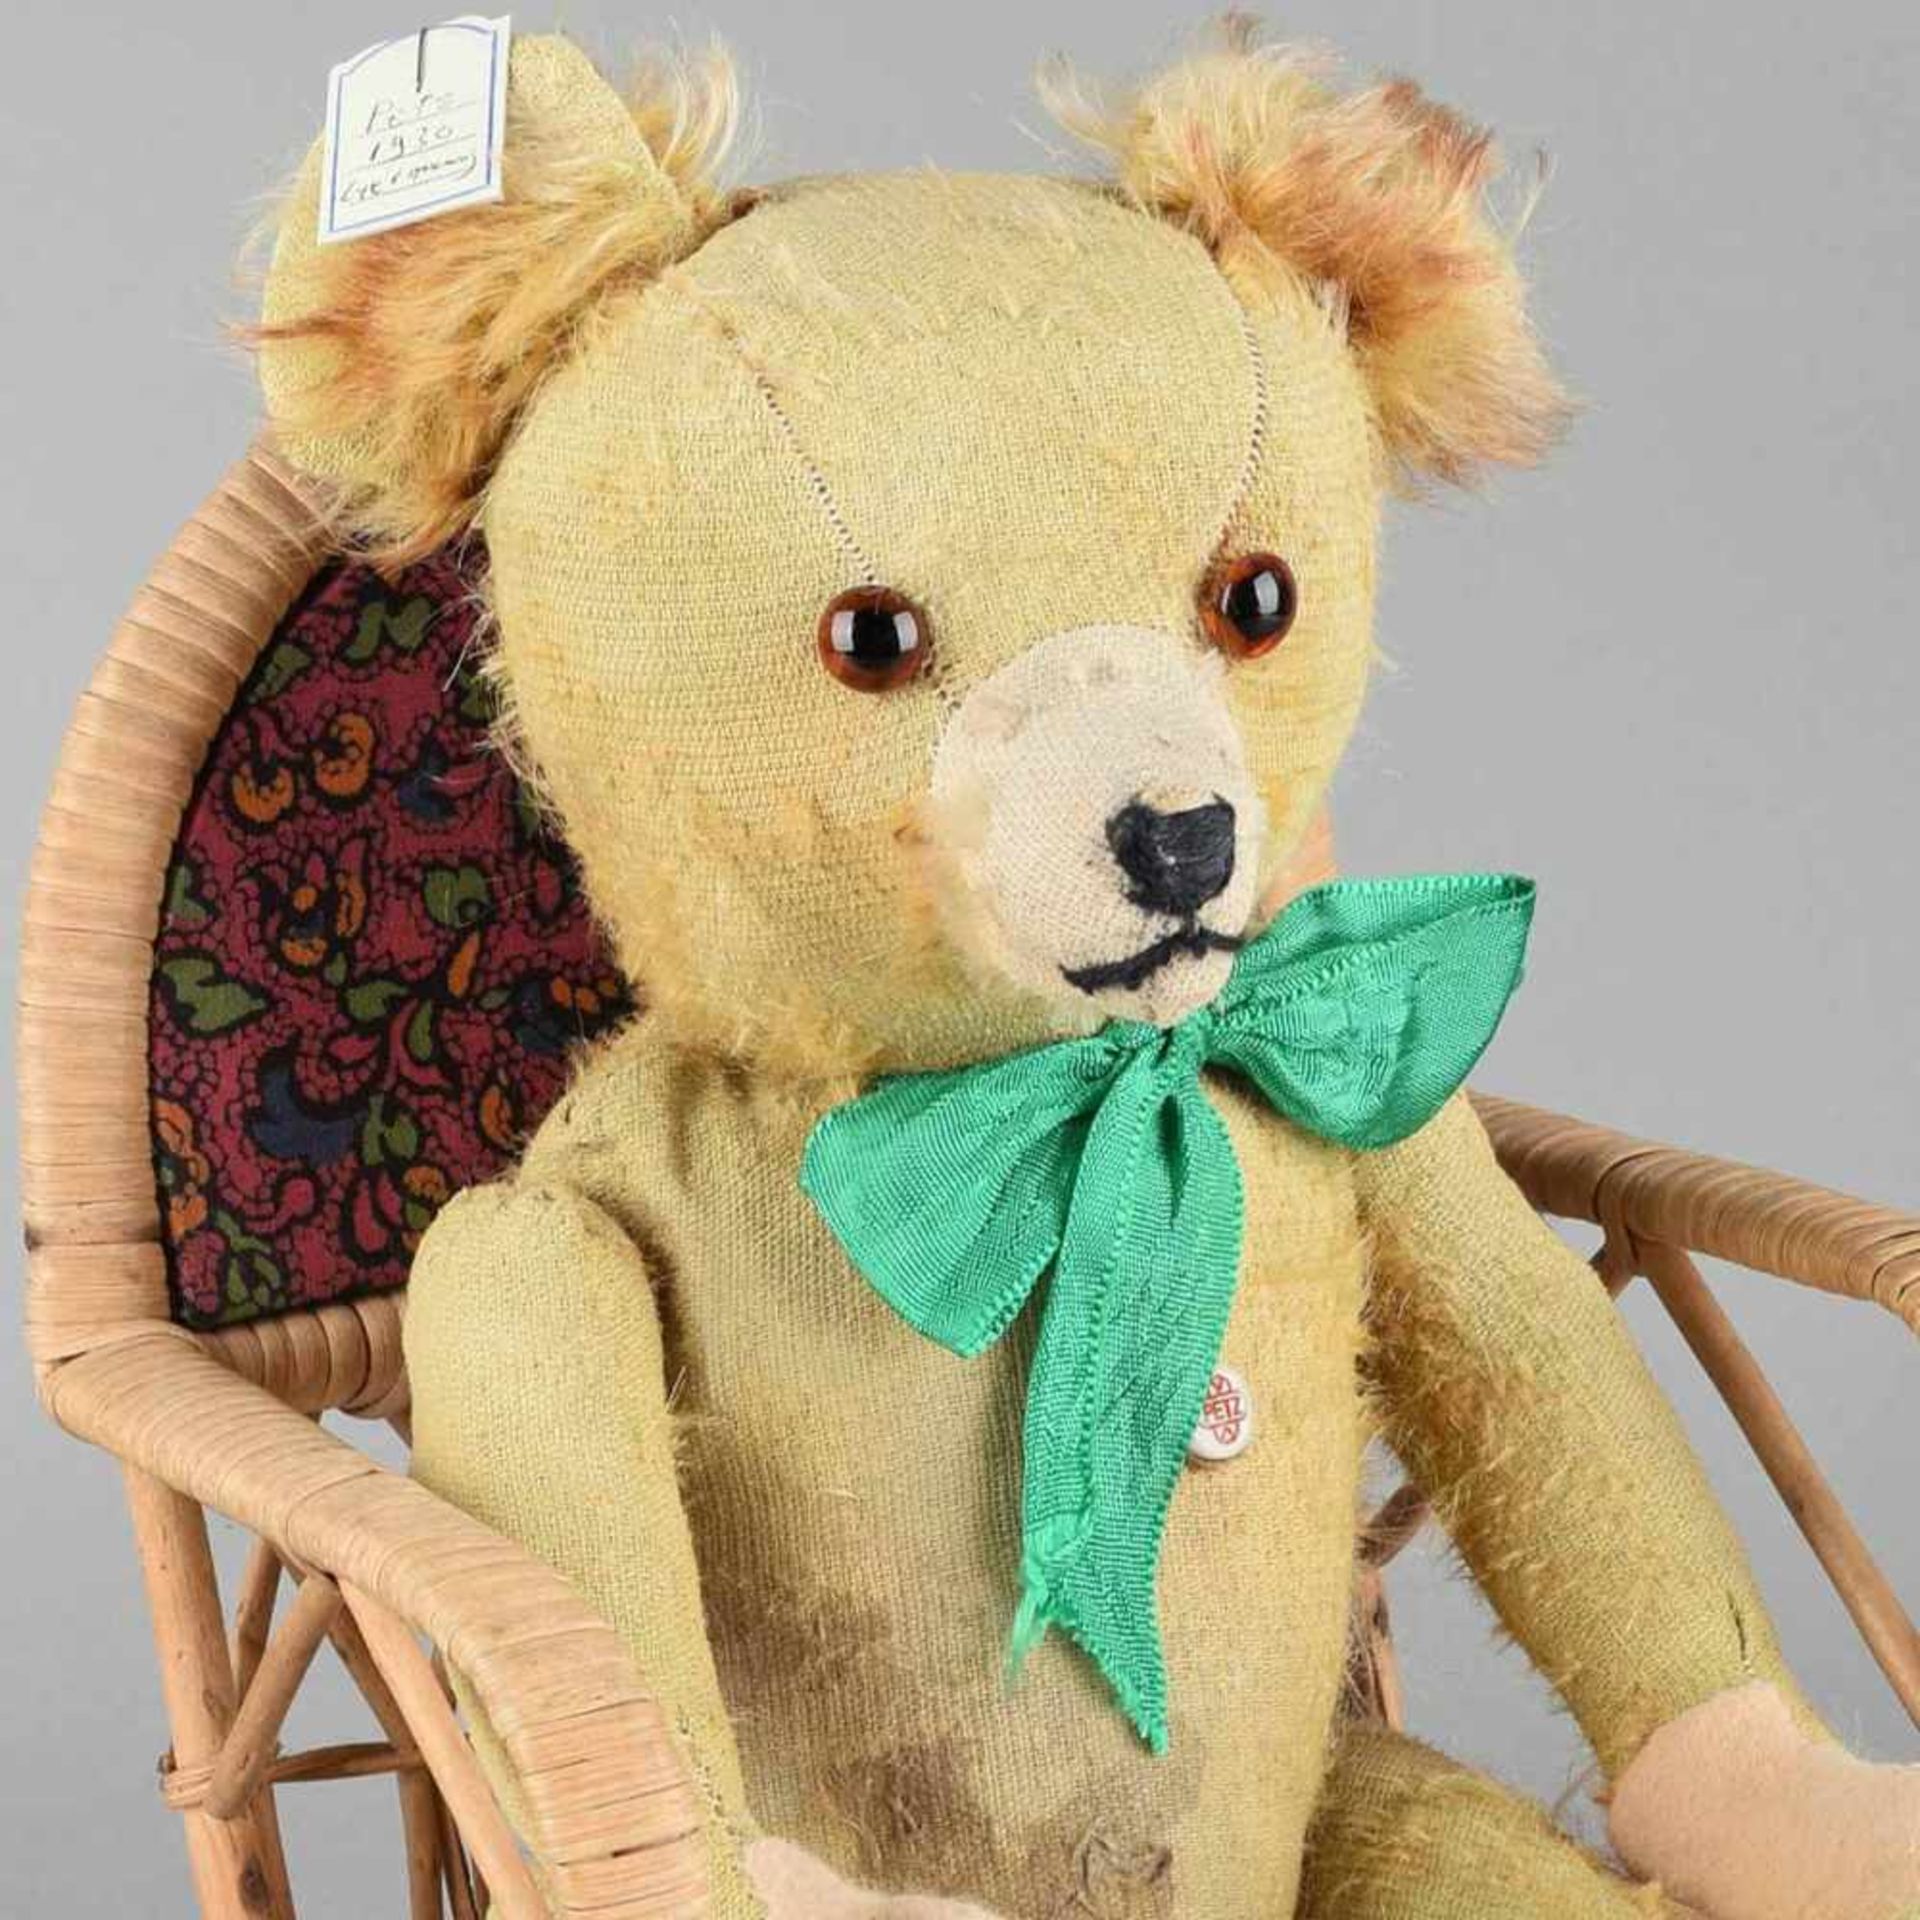 Teddybär Hersteller: Petz, gefüllter Körper, bewegliche Glieder, Fell weitgehend abgegriffen, H